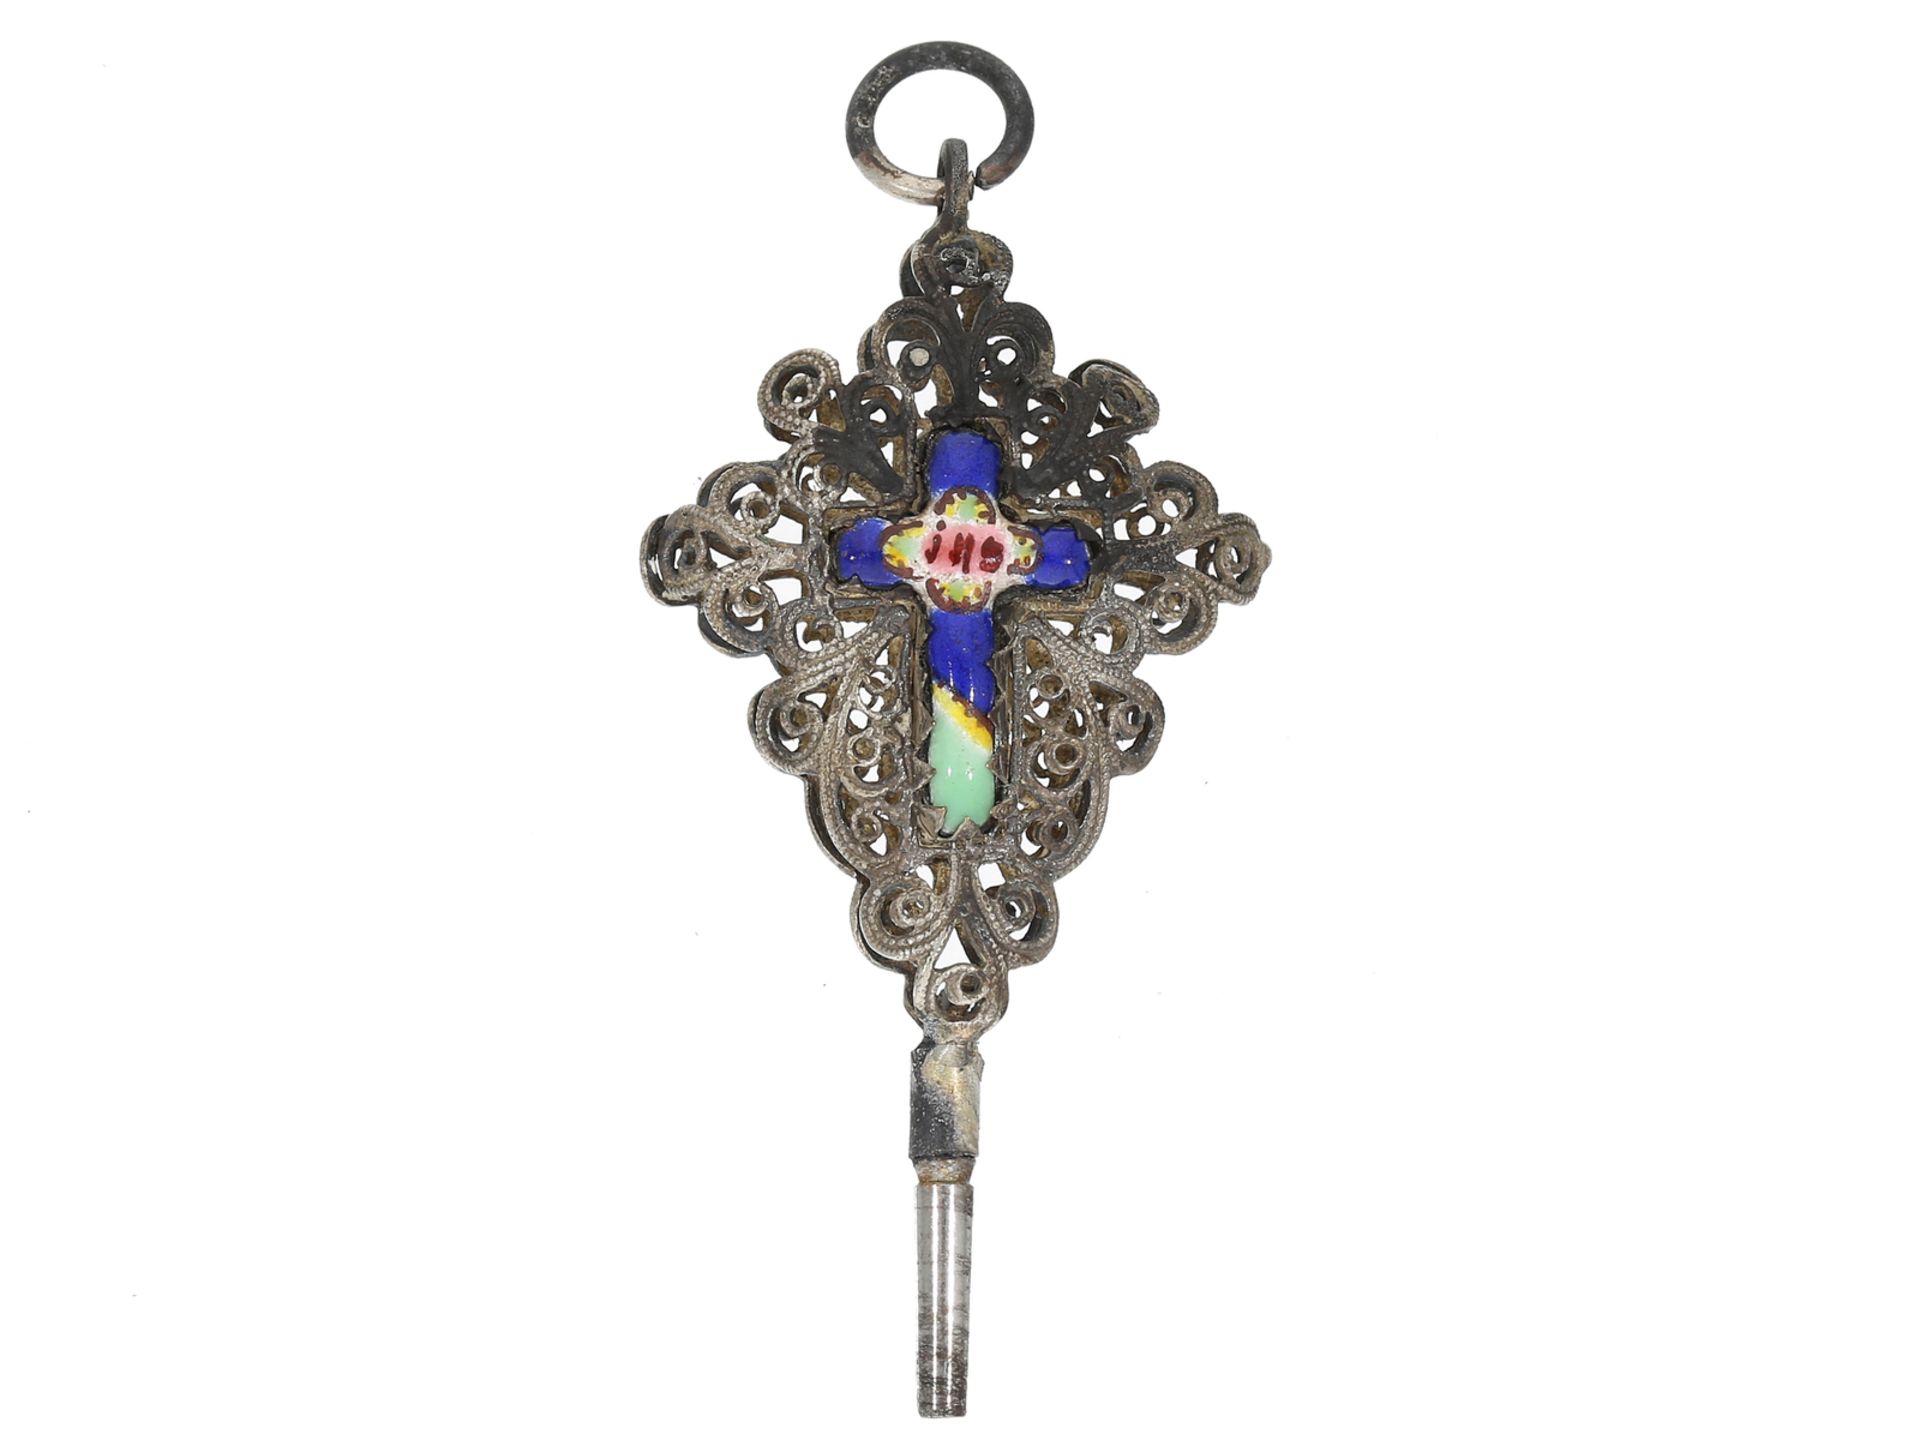 Spindeluhrenschlüssel: sehr seltener emaillierter Uhrenschlüssel mit christlichem Motiv, ca. 1800 - Bild 2 aus 2